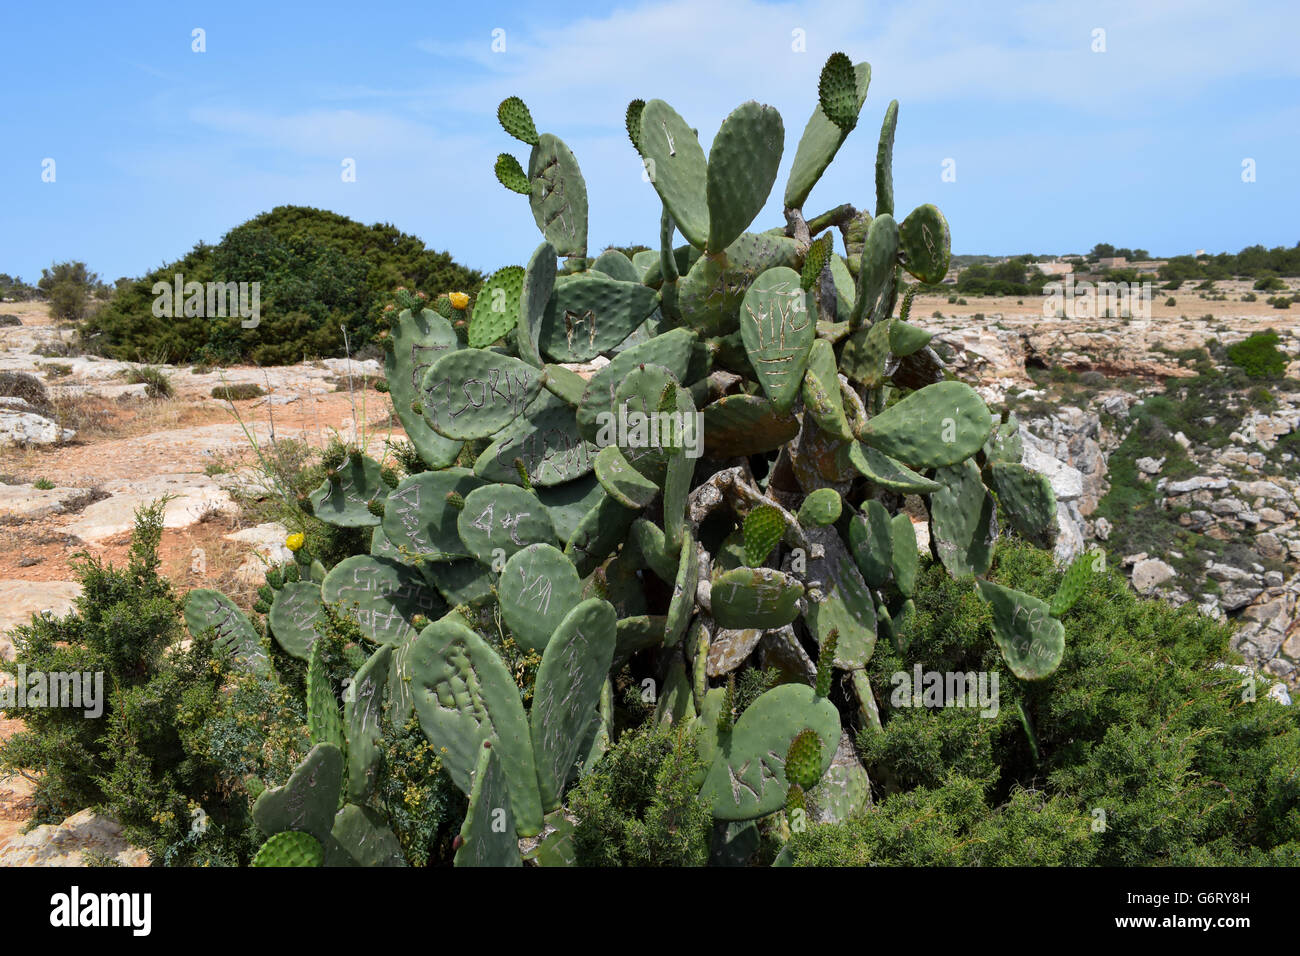 Graffiti names scored into prickly pear cactus leaves, Faro de la Mola, Formentera Stock Photo